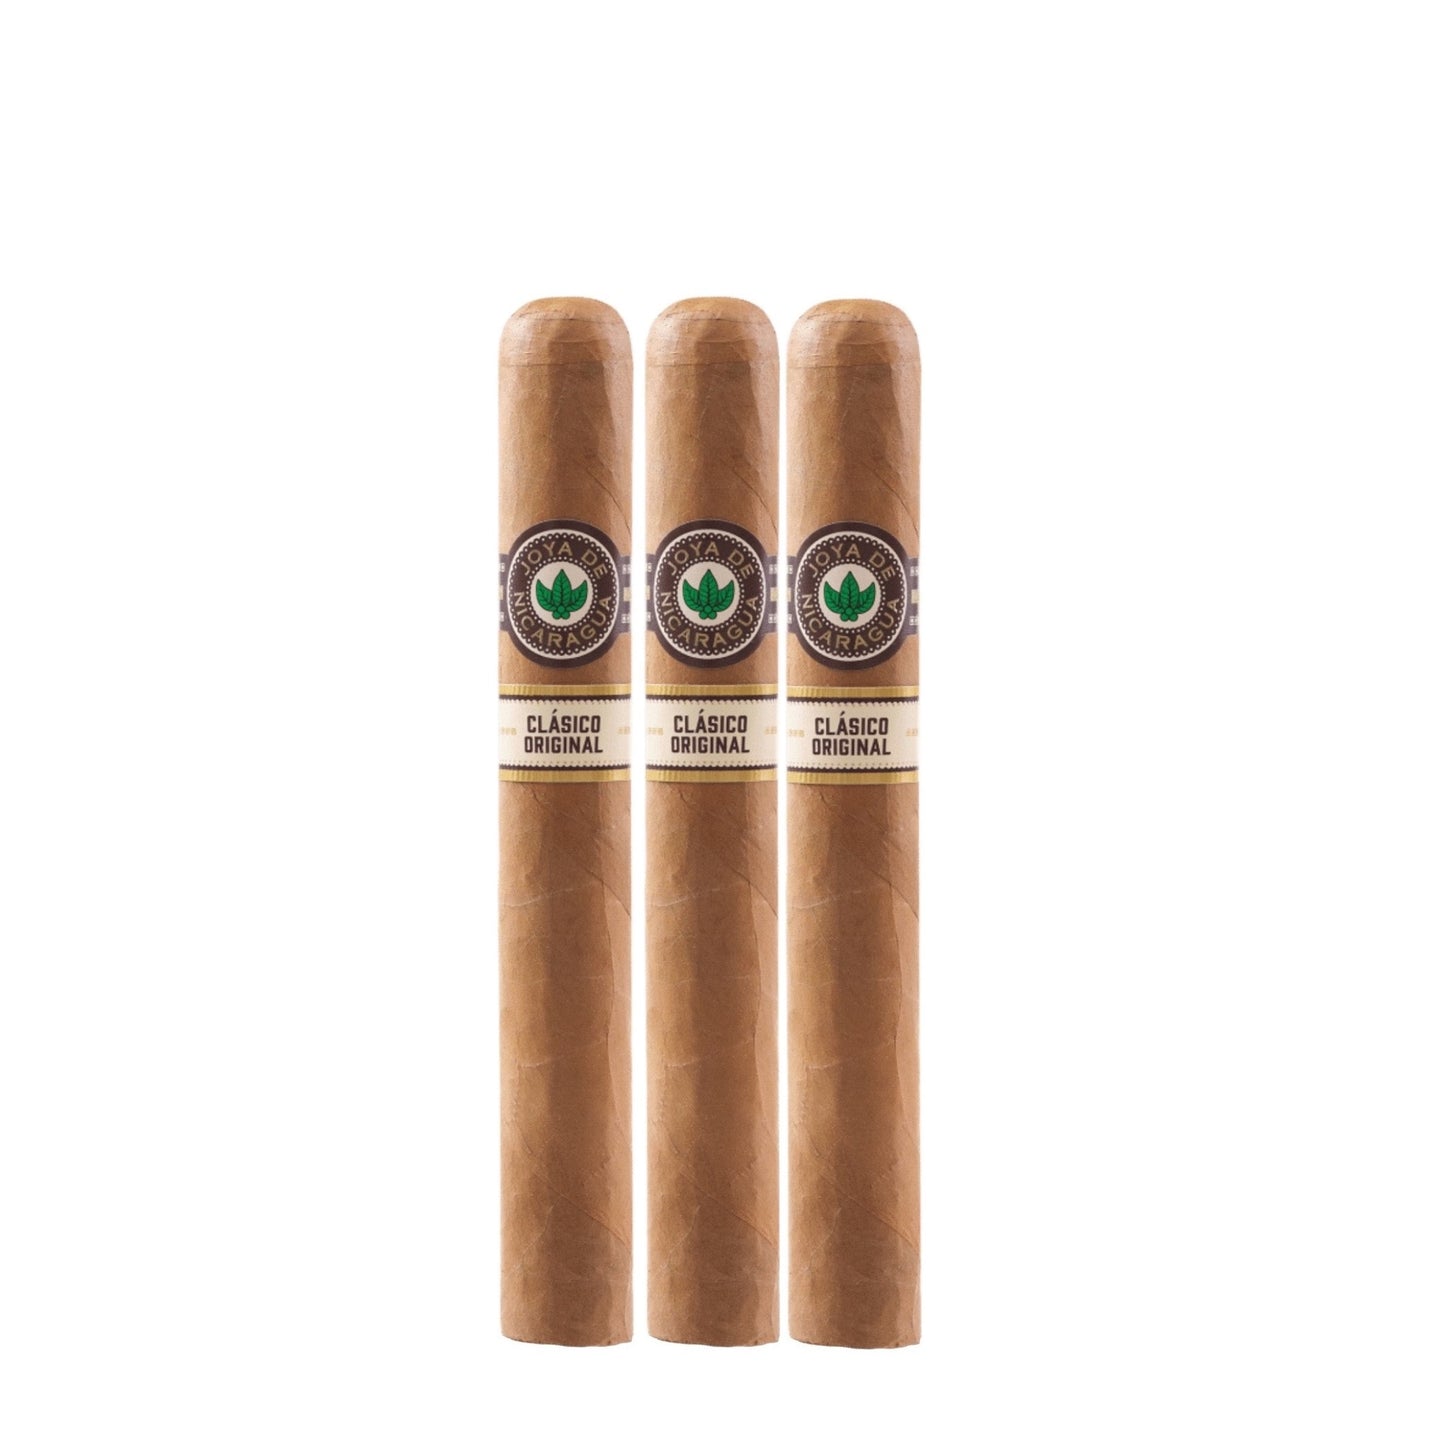 Joya de Nicaragua Clasico Seleccion B - Cigars to share